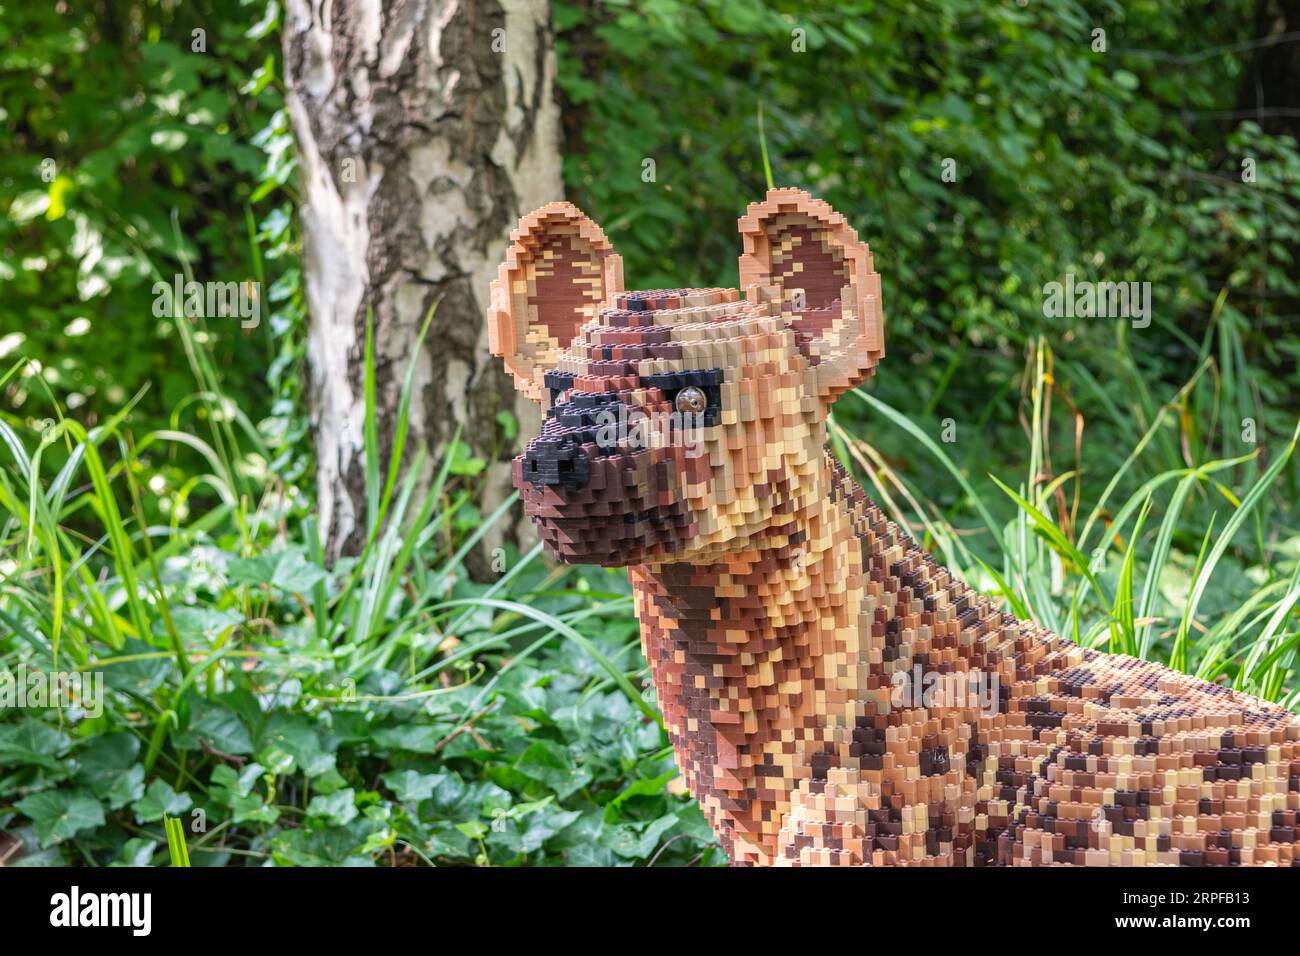 Zoo Planckendael, Malines, Belgique - 29 août 2023 : Safari en briques et Animal Expo construits avec des briques Lego. Hyena repéré. Banque D'Images